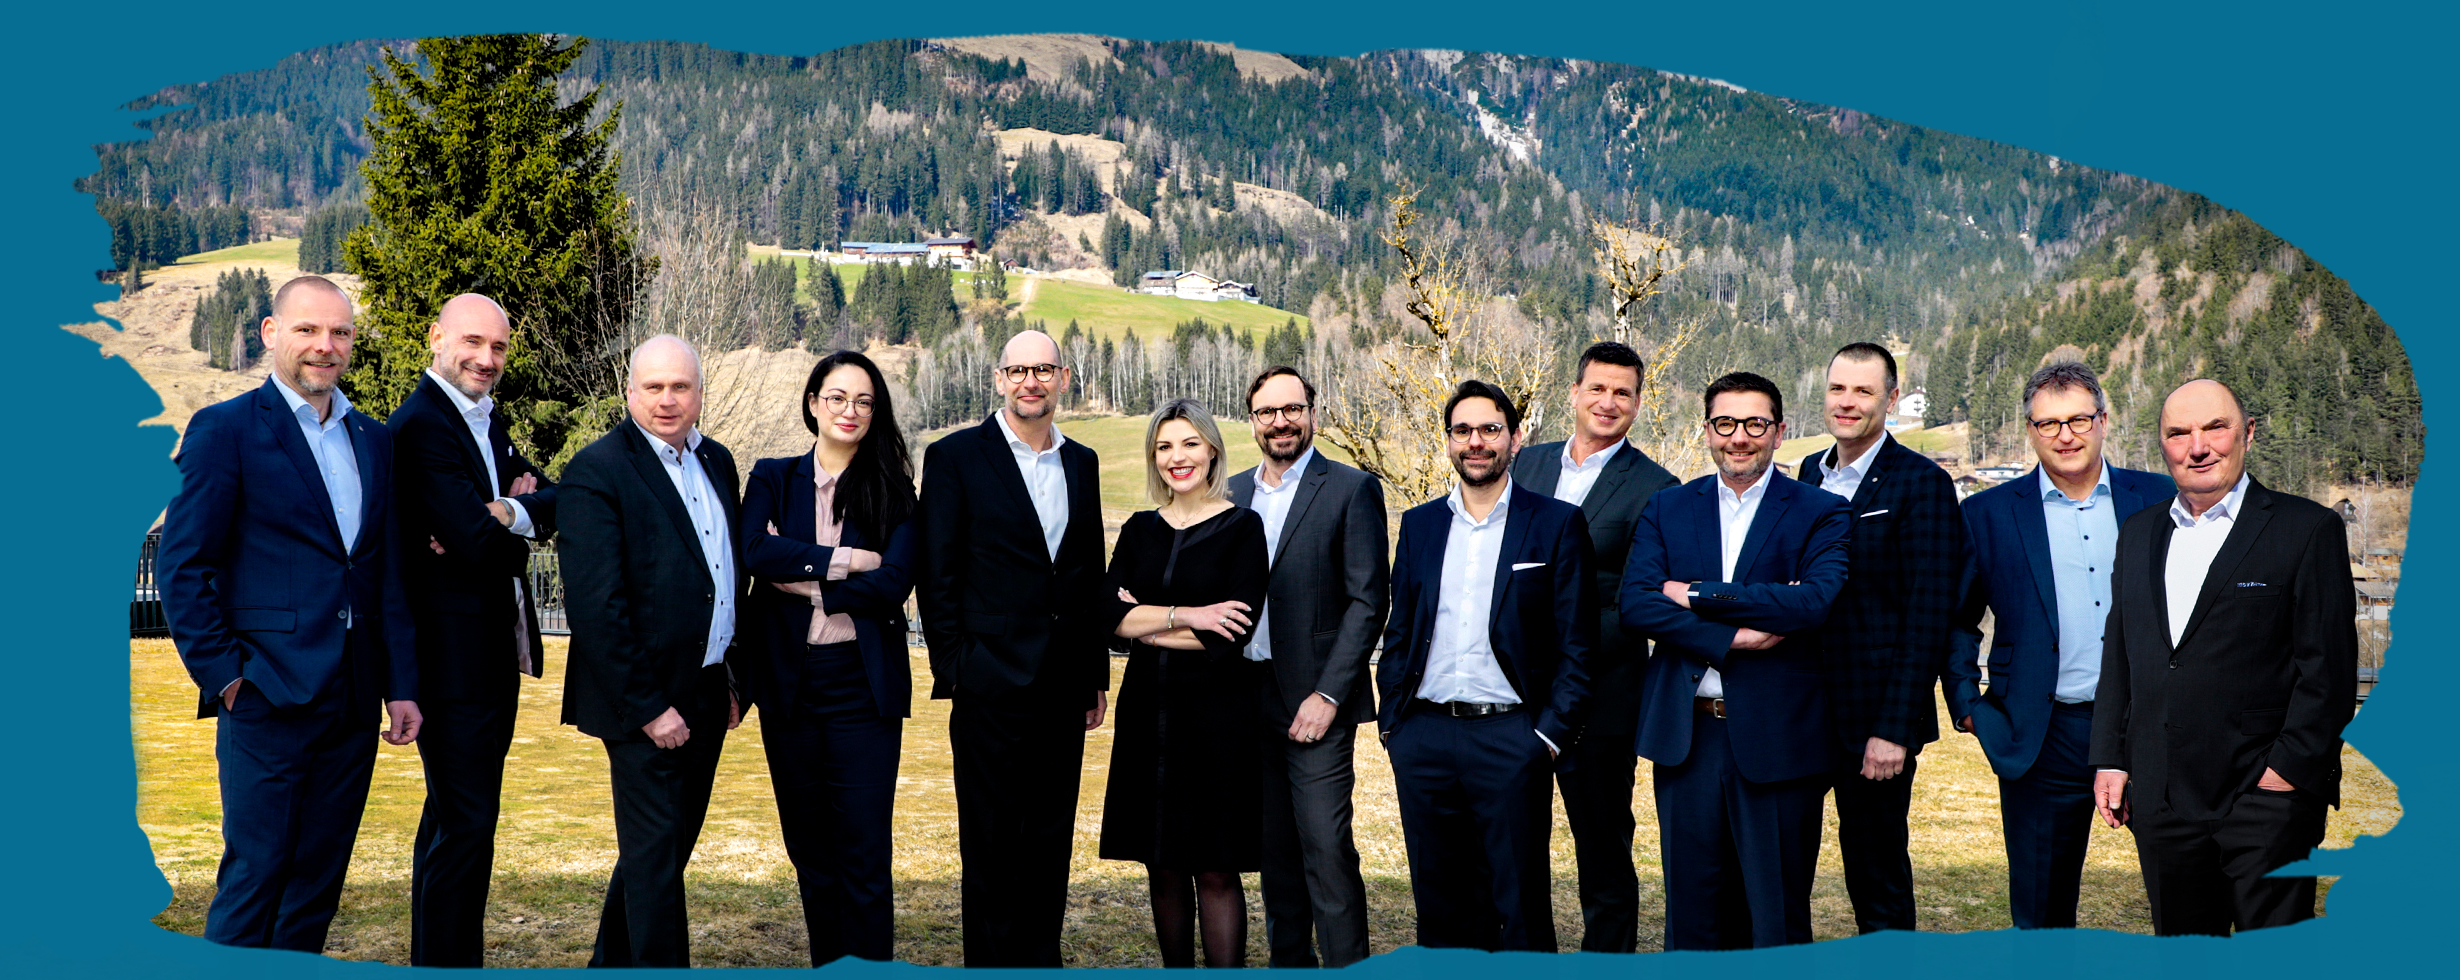 Man sieht die 13 leitenden Personen der Wackler Group nebeneinander auf einer Wiese stehend. Sie tragen Anzug, Blazer oder Kleid. Im Hintergrund ist eine Berglandschaft zu erkennen.